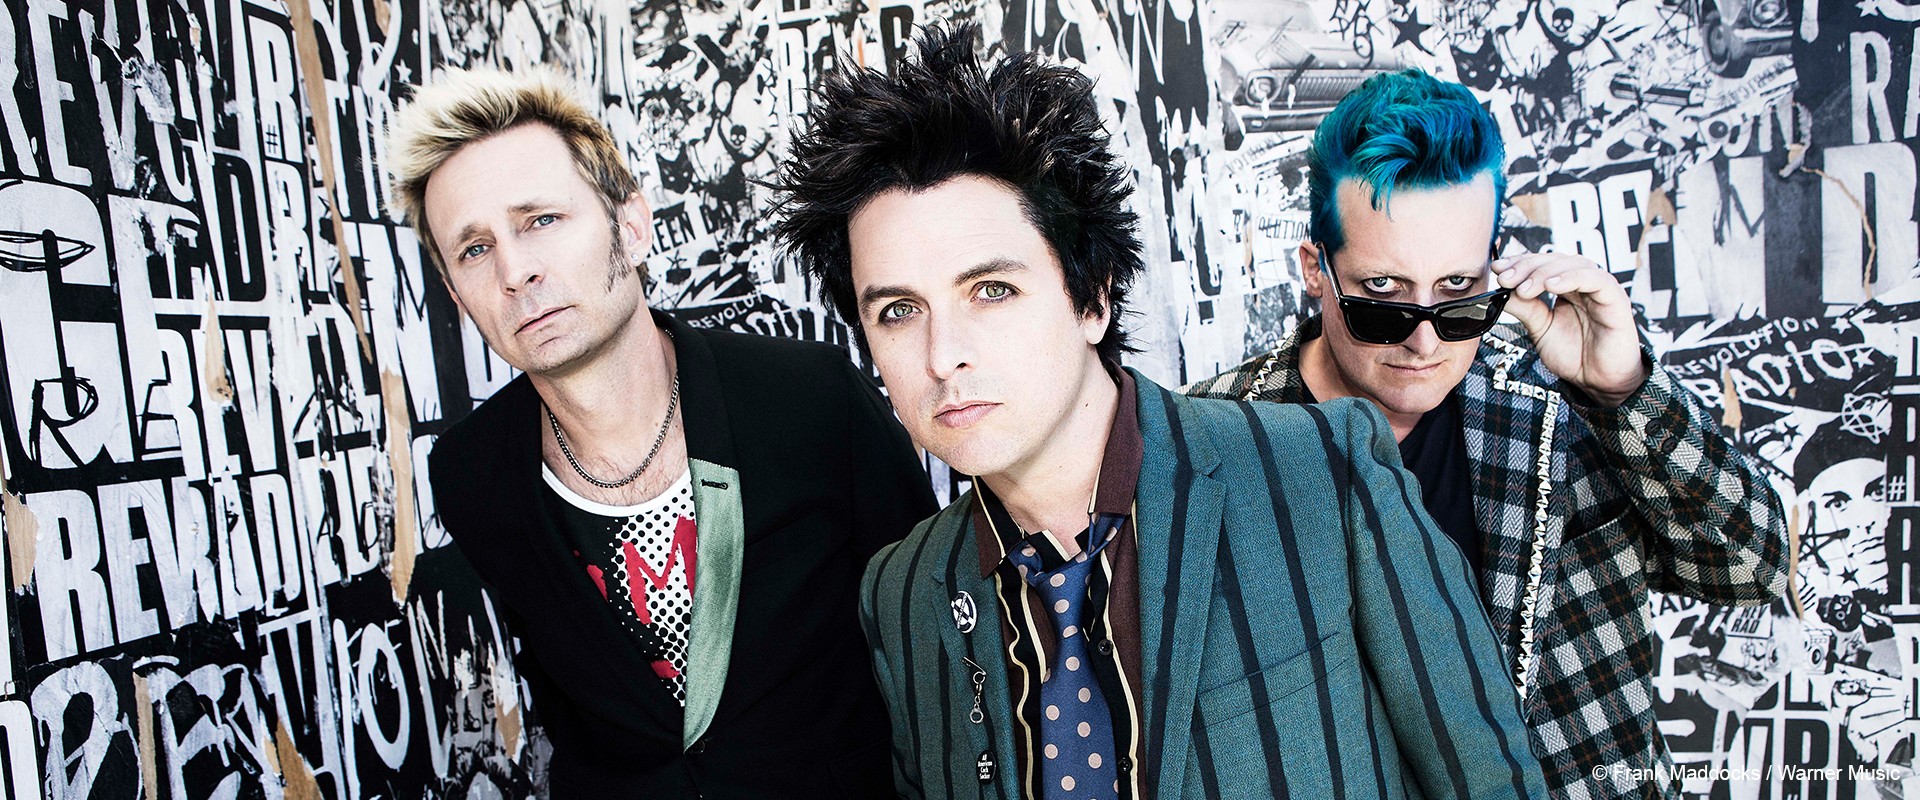 Neues Album von Green Day erscheint im Februar